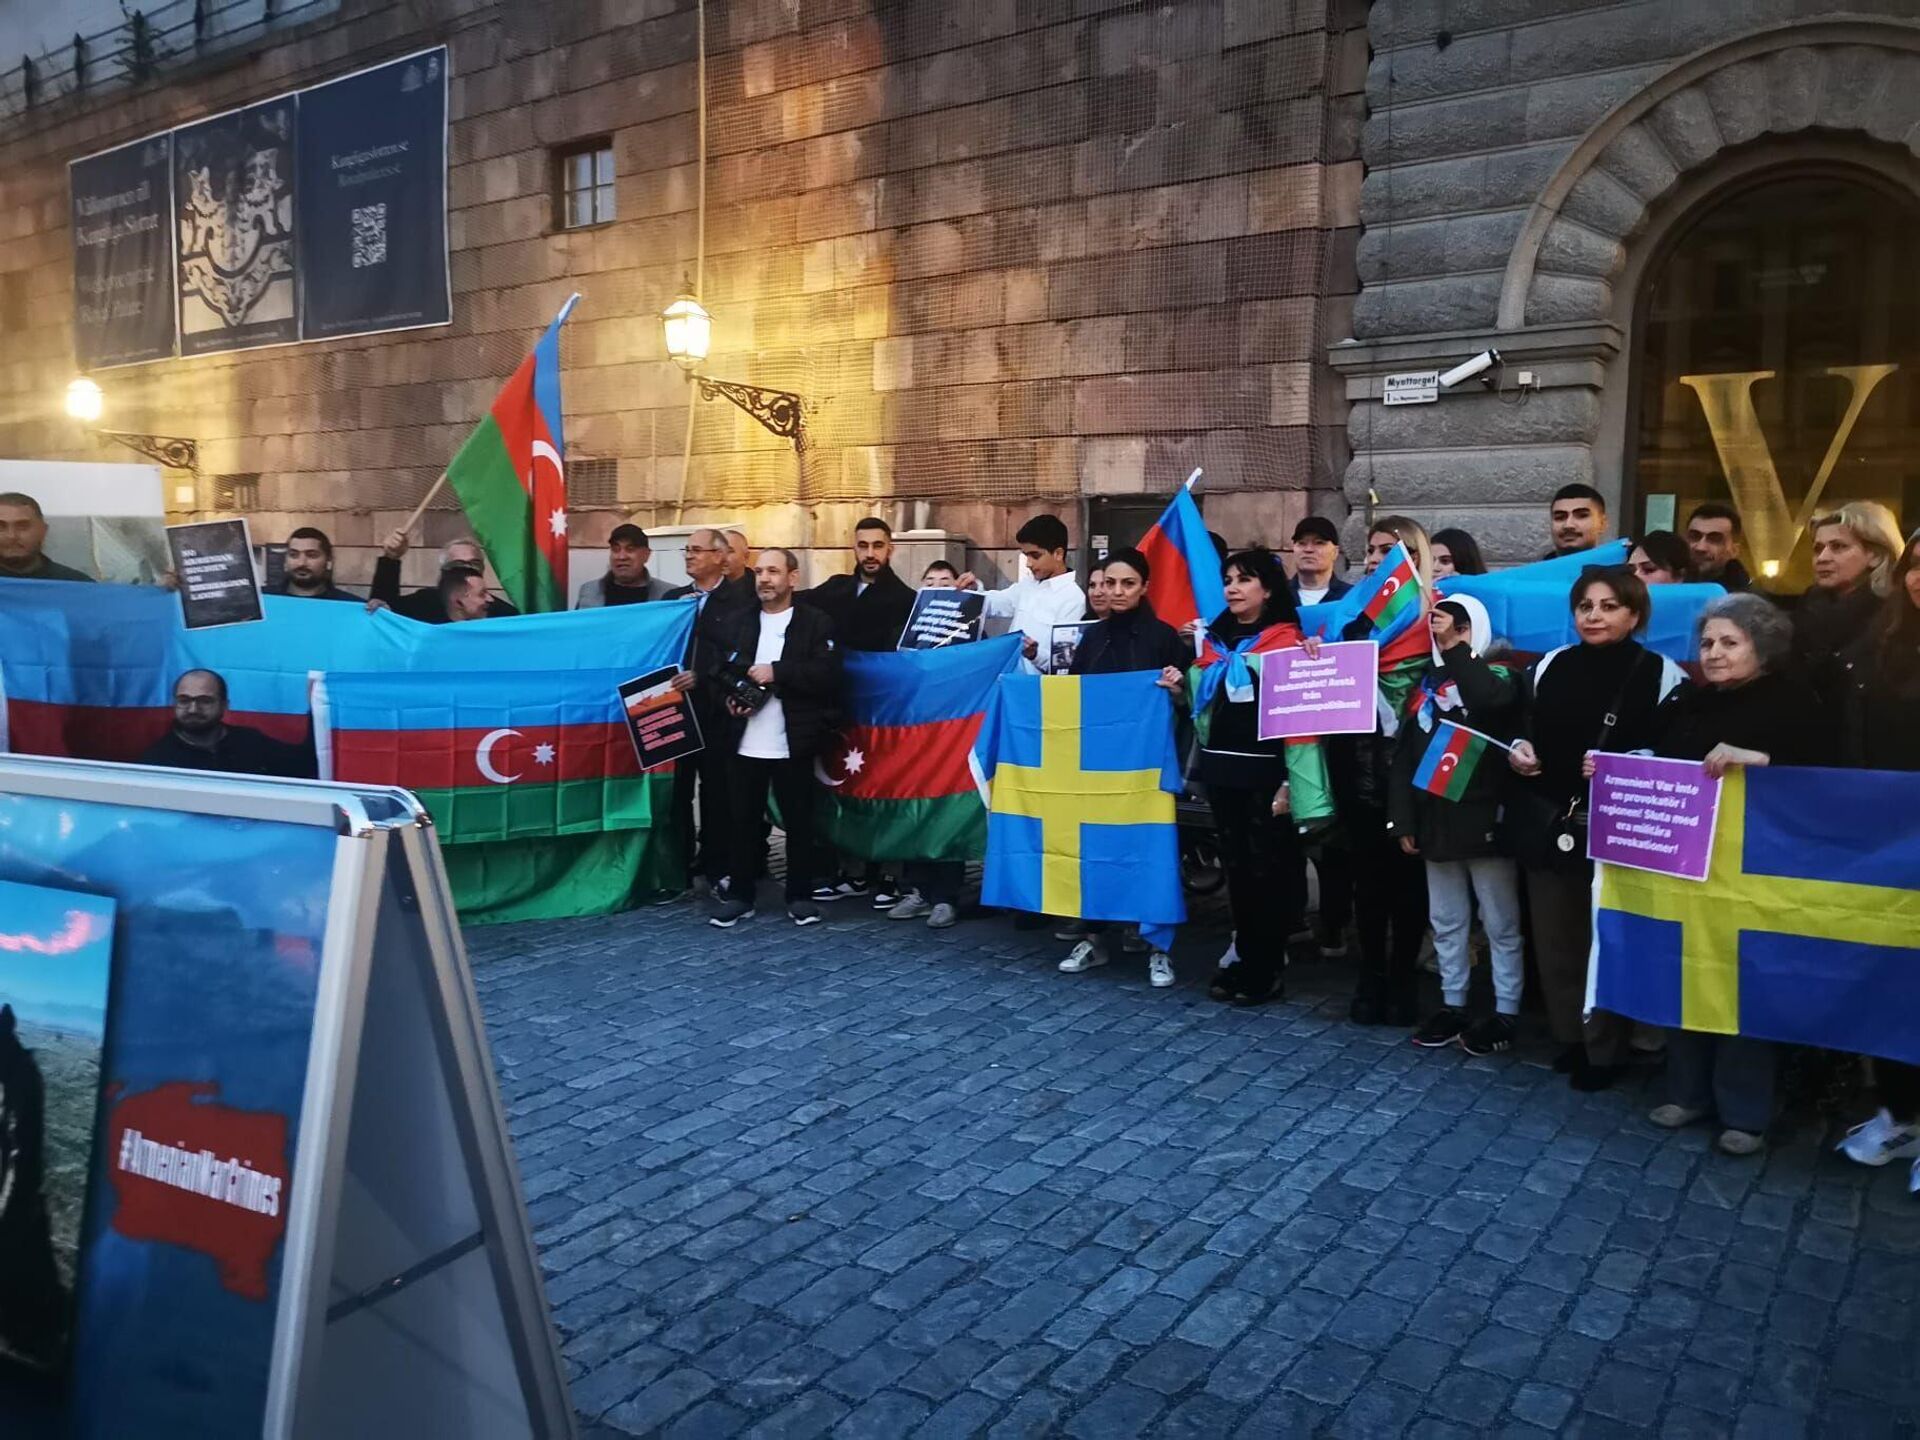 Aзербайджанская община провела пикет перед парламентом Швеции - Sputnik Азербайджан, 1920, 24.09.2022